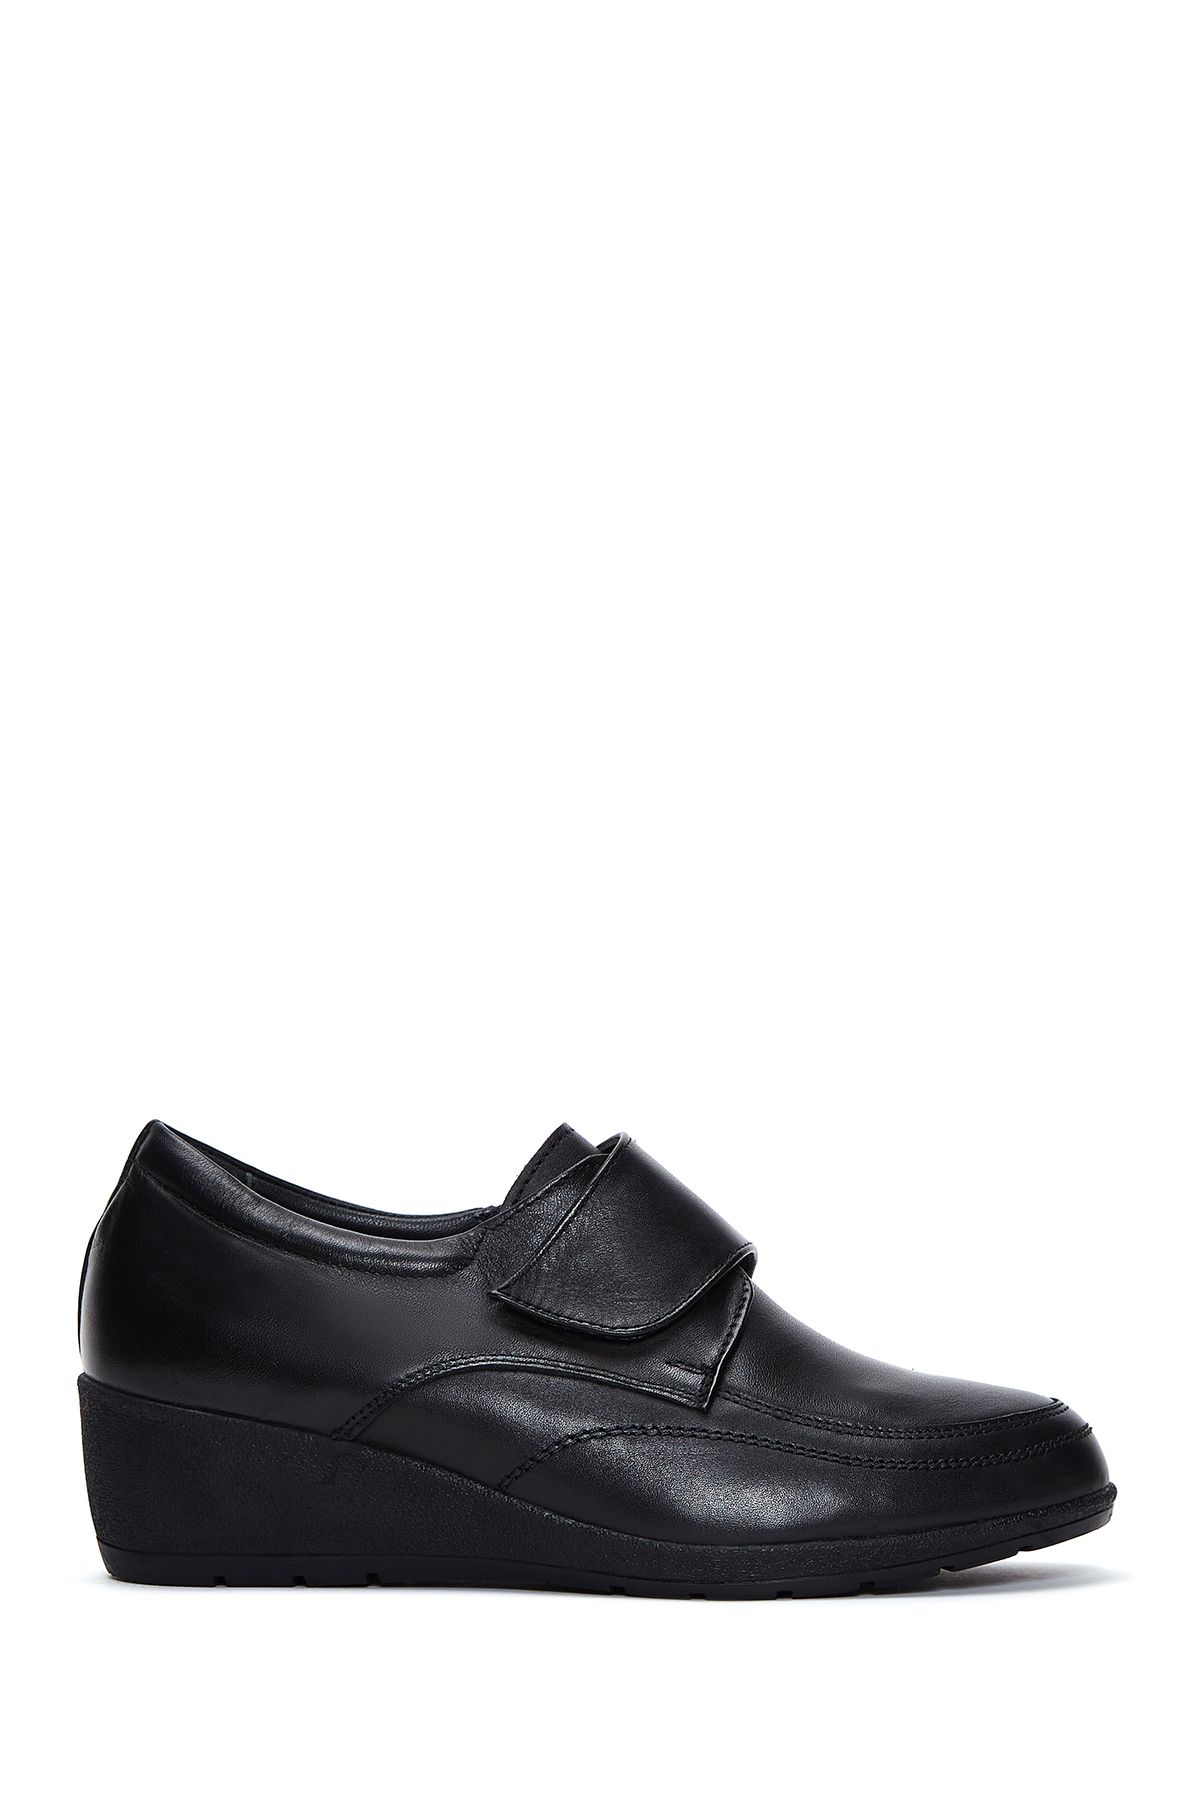 Derimod Kadın Siyah Deri Dolgu Topuk Comfort Ayakkabı 23wfd411118